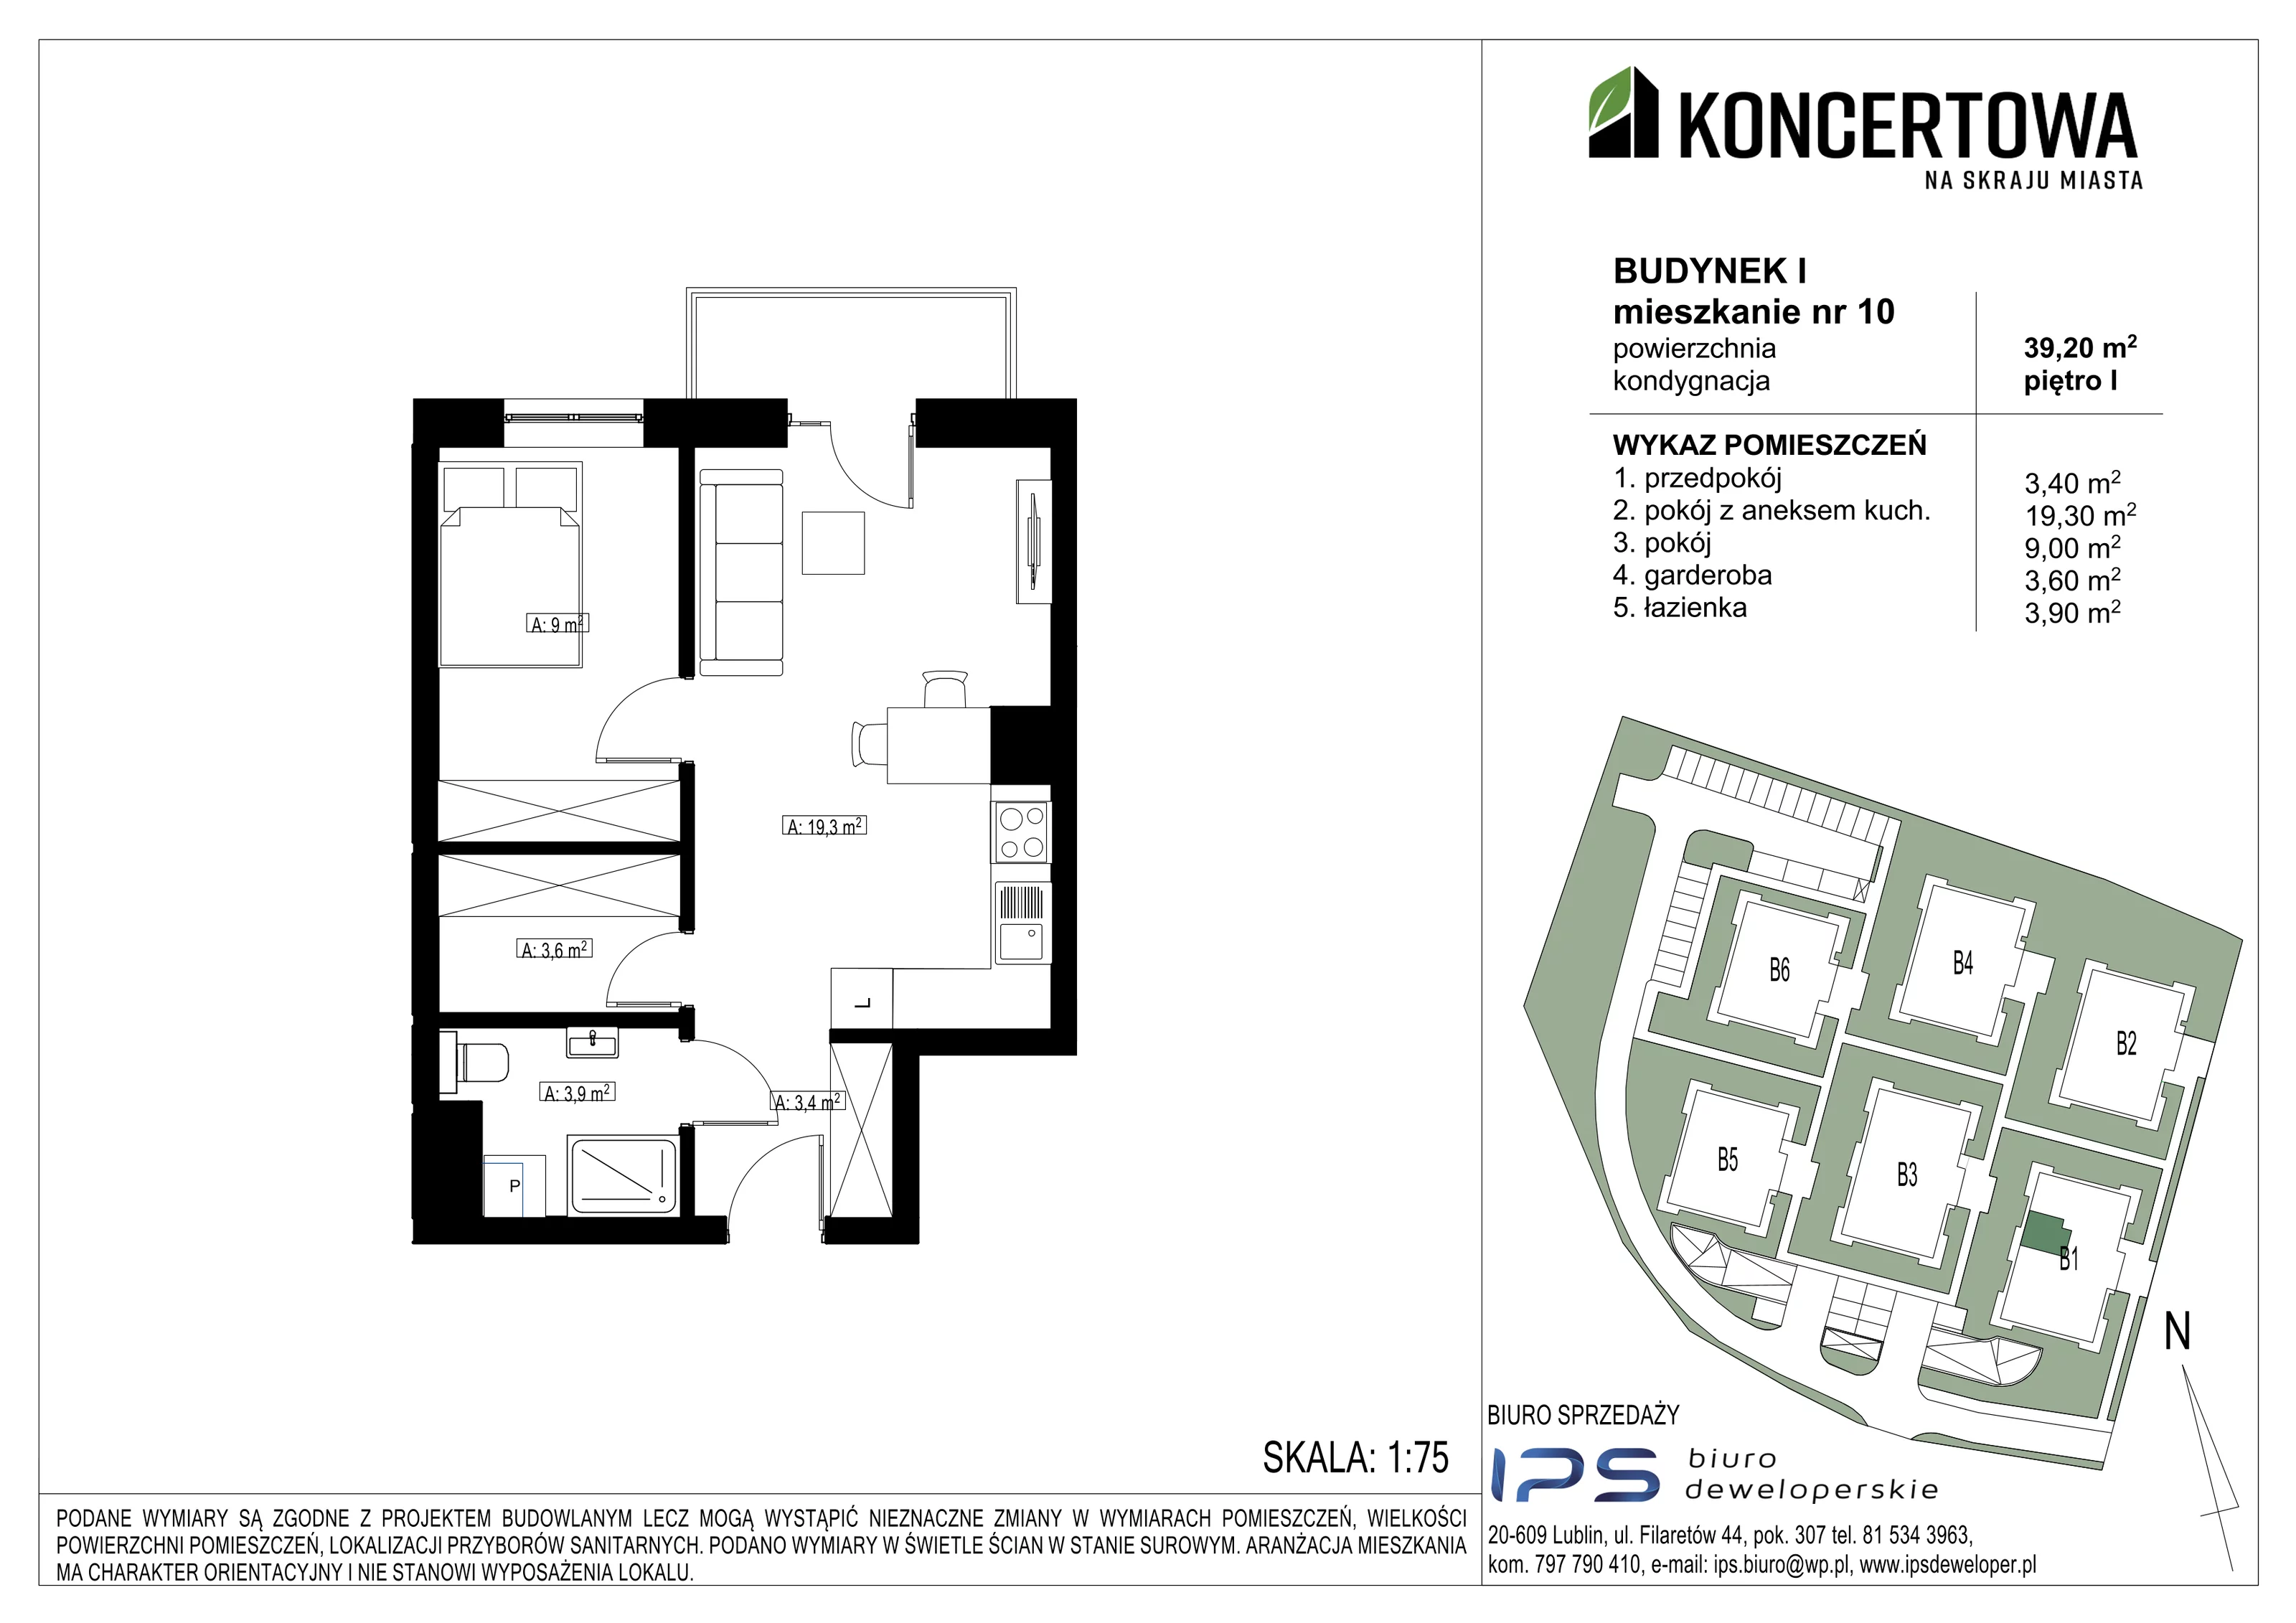 Mieszkanie 39,20 m², piętro 1, oferta nr 2_I/10, KONCERTOWA - Na skraju miasta, Lublin, Czechów Północny, Czechów Północny,  ul. Koncertowa